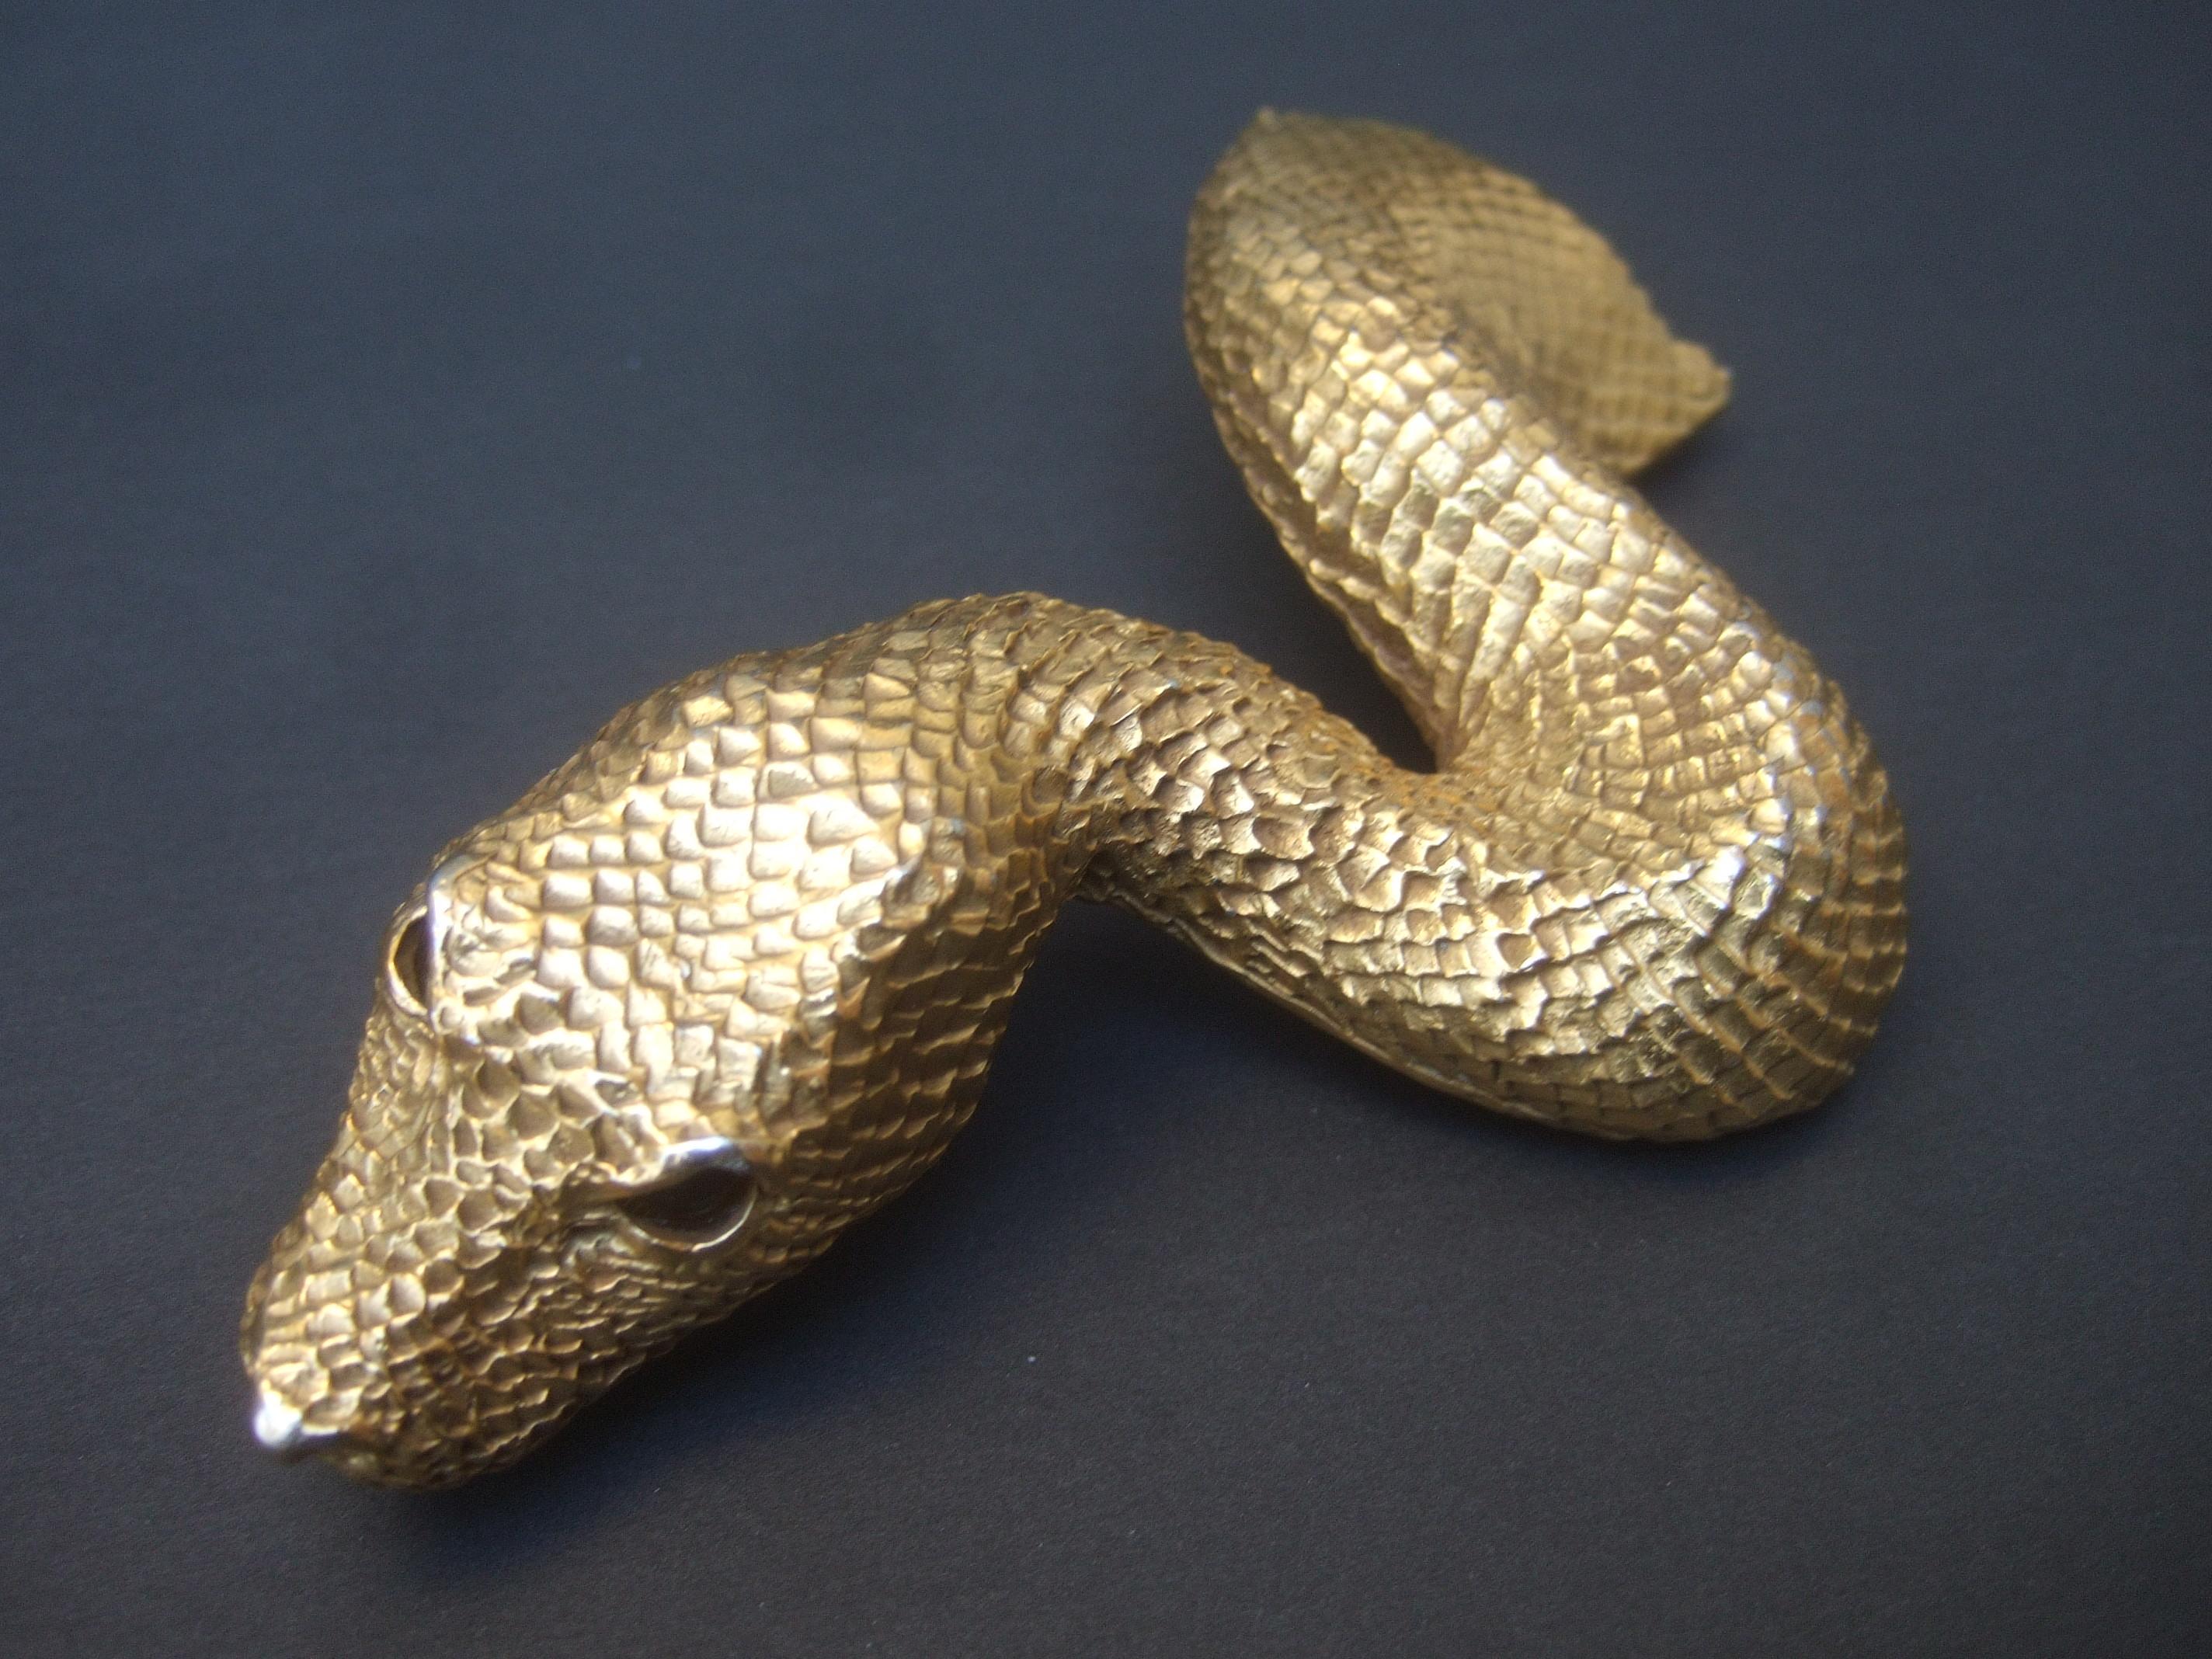 Christopher Ross 24k Gold Plated Serpent Belt Buckle circa 1980 3